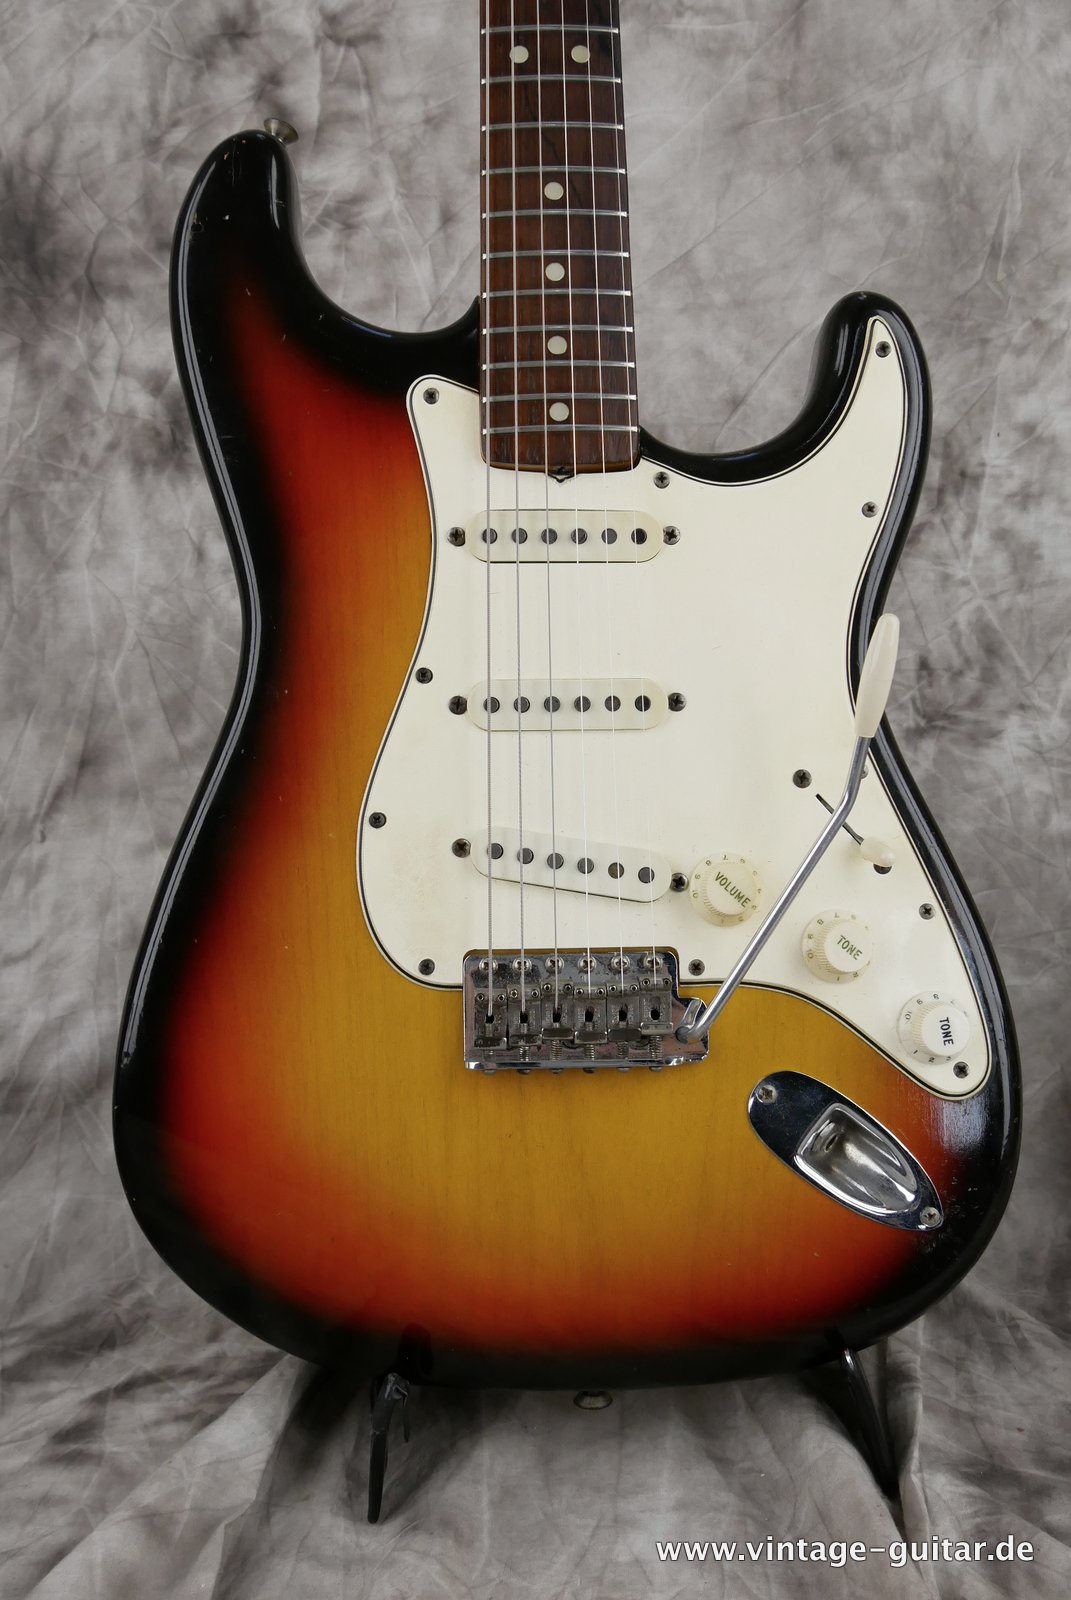 img/vintage/4921/Fender-Stratocaster-1965-sunburst-002.JPG